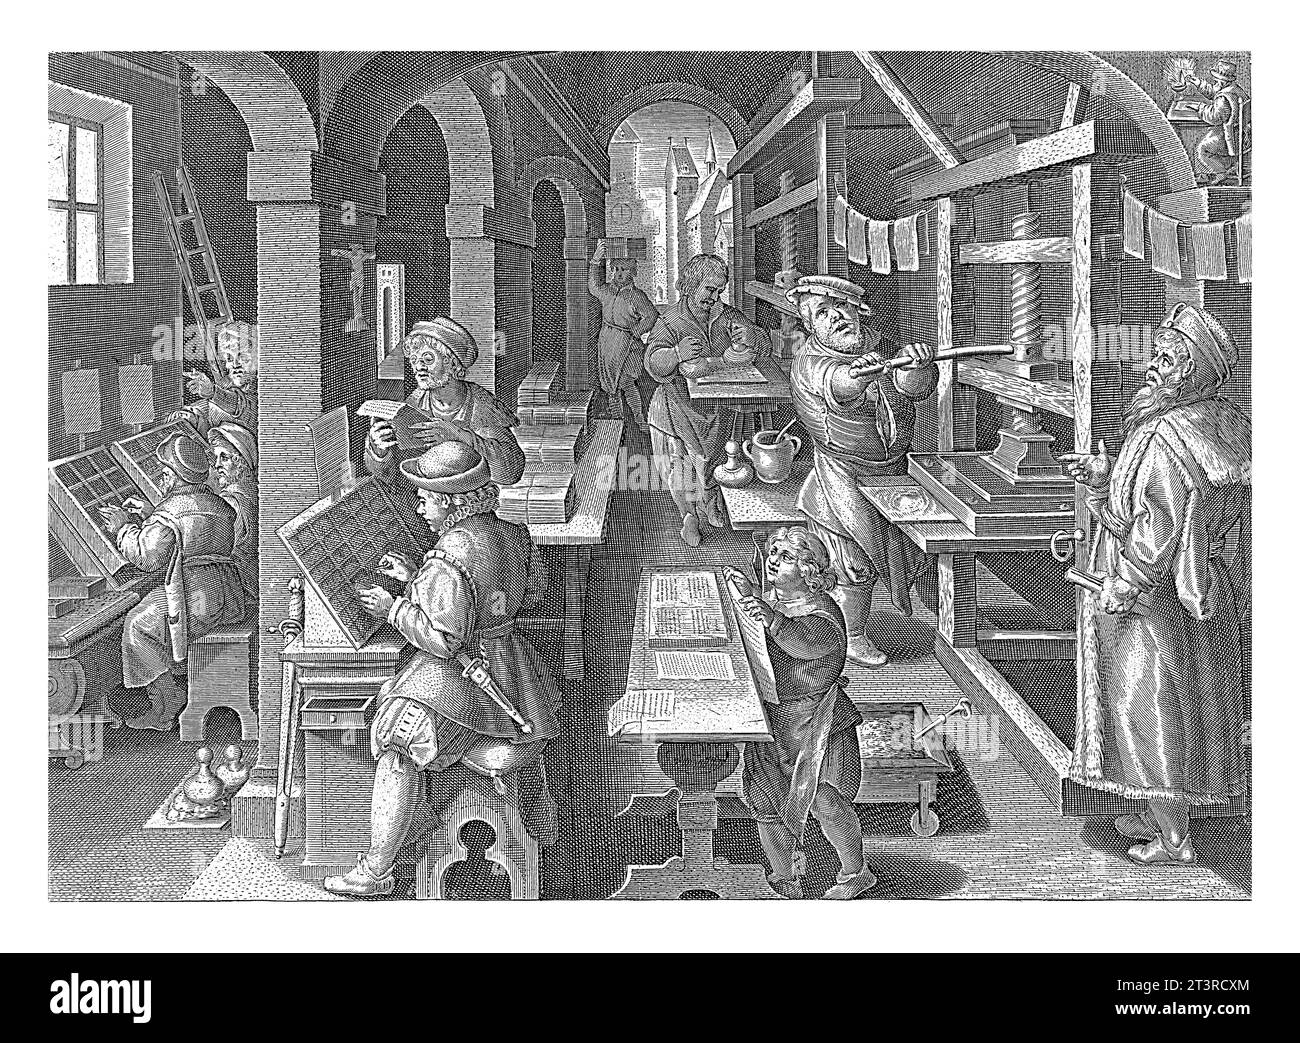 Stampa di libri, Philips Galle (attribuita alla bottega di), dopo Jan van der Straet, c. 1589 - c. 1593 Una tipografia con macchine da scrivere sulla sinistra AN Foto Stock